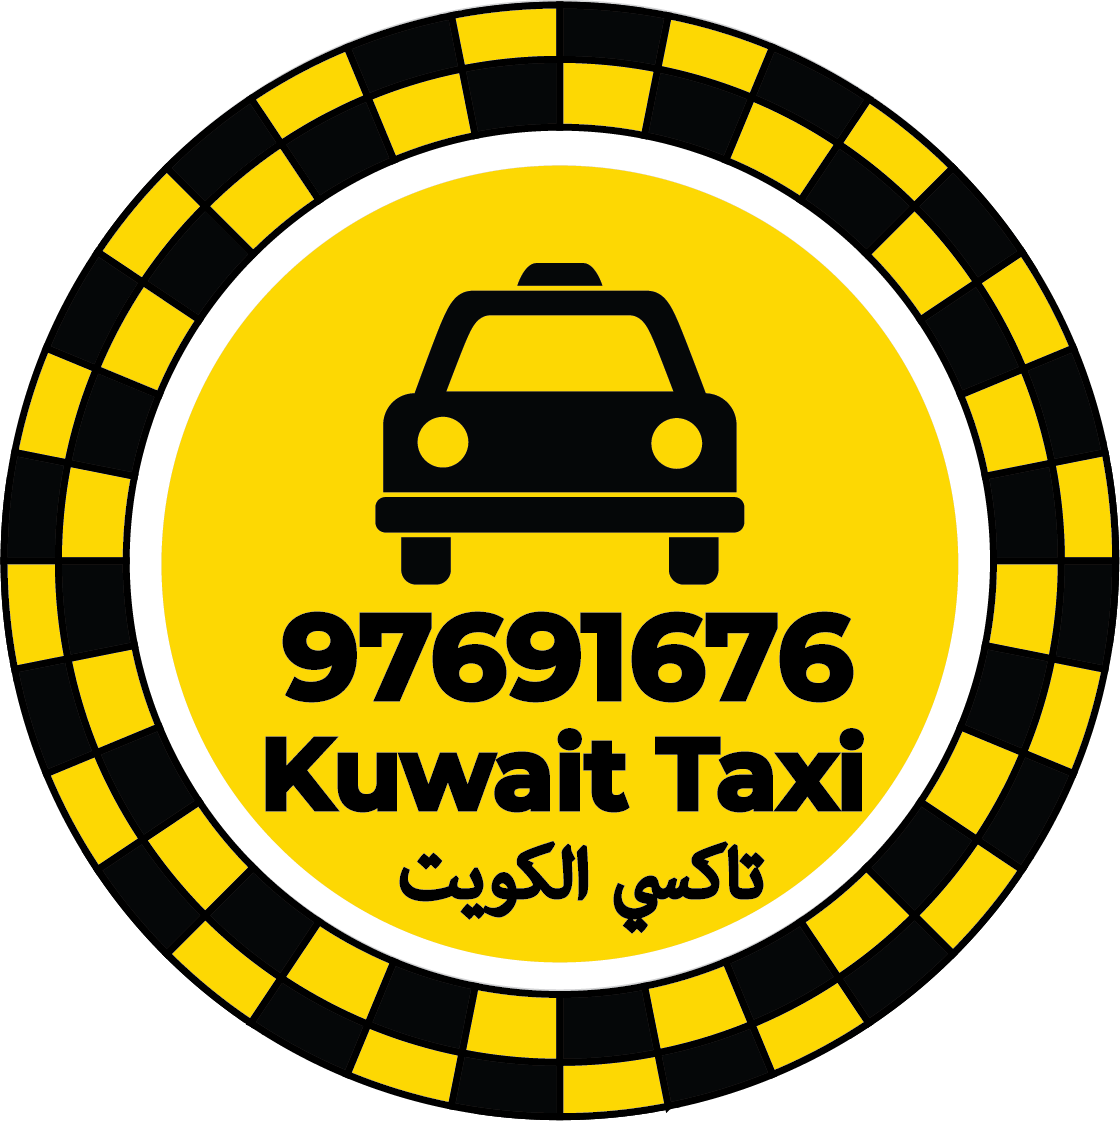 تاكسي في الفحيحيل - رقم تاكسي في الفحيحيل توصيل لجميع الوجهات بسيارات حديثة ونظيفة وسائقين خبرة ودراية في شوارع الكويت ومناطقها المختلفة ، متوفرين على مدى 24 ساعة .